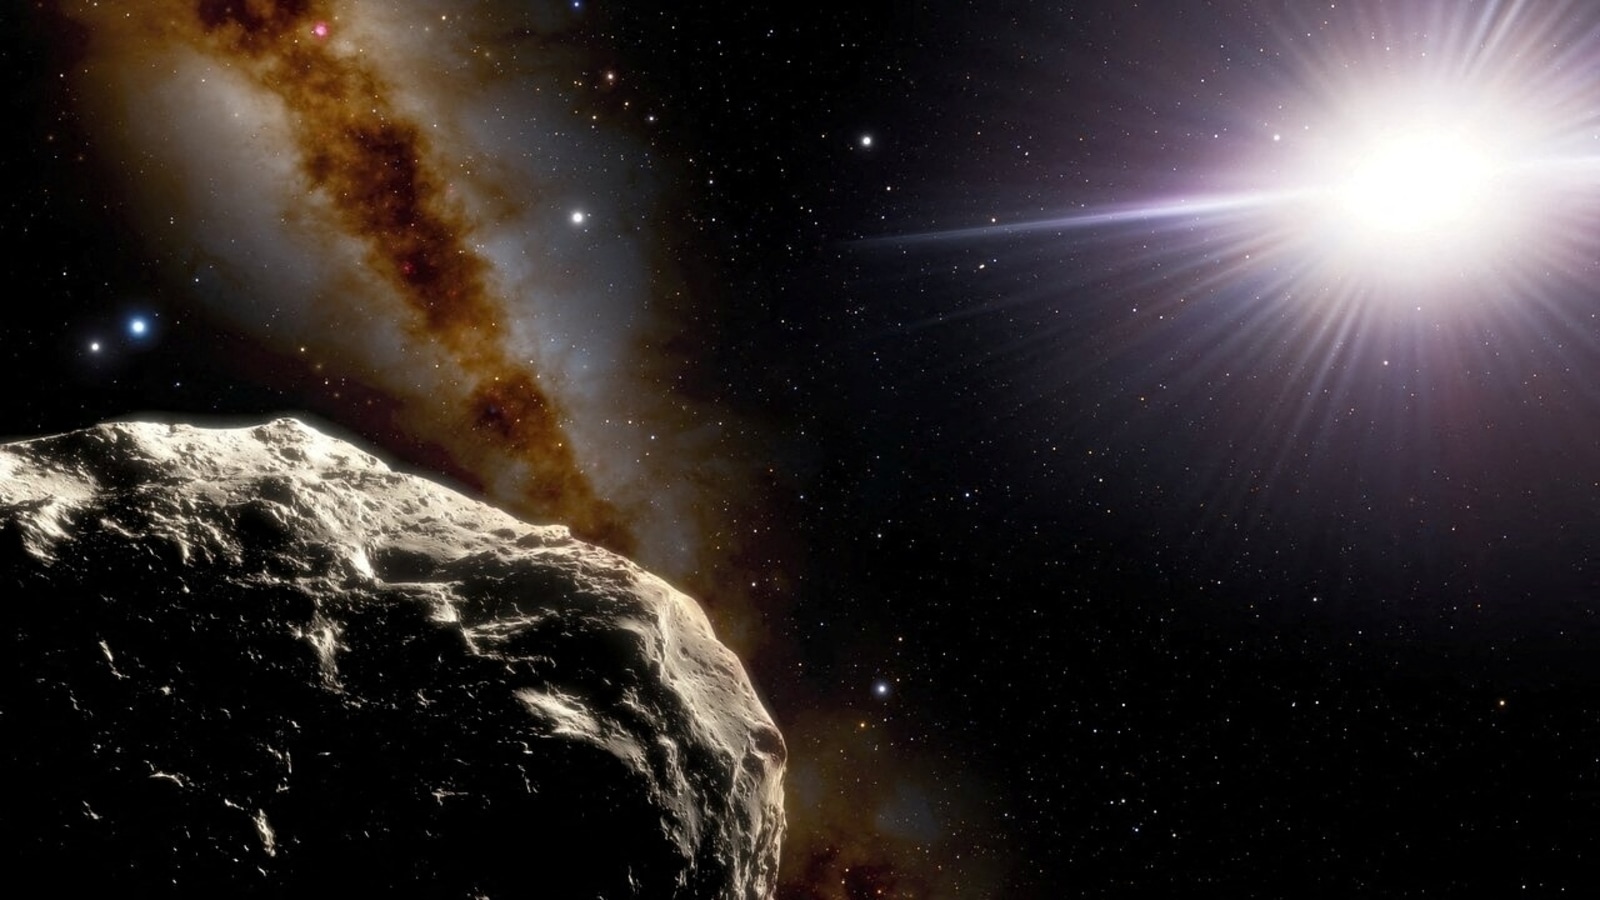 1500-metrowa asteroida Mamuta zmierzająca w kierunku Ziemi;  Zbliż się już dziś!